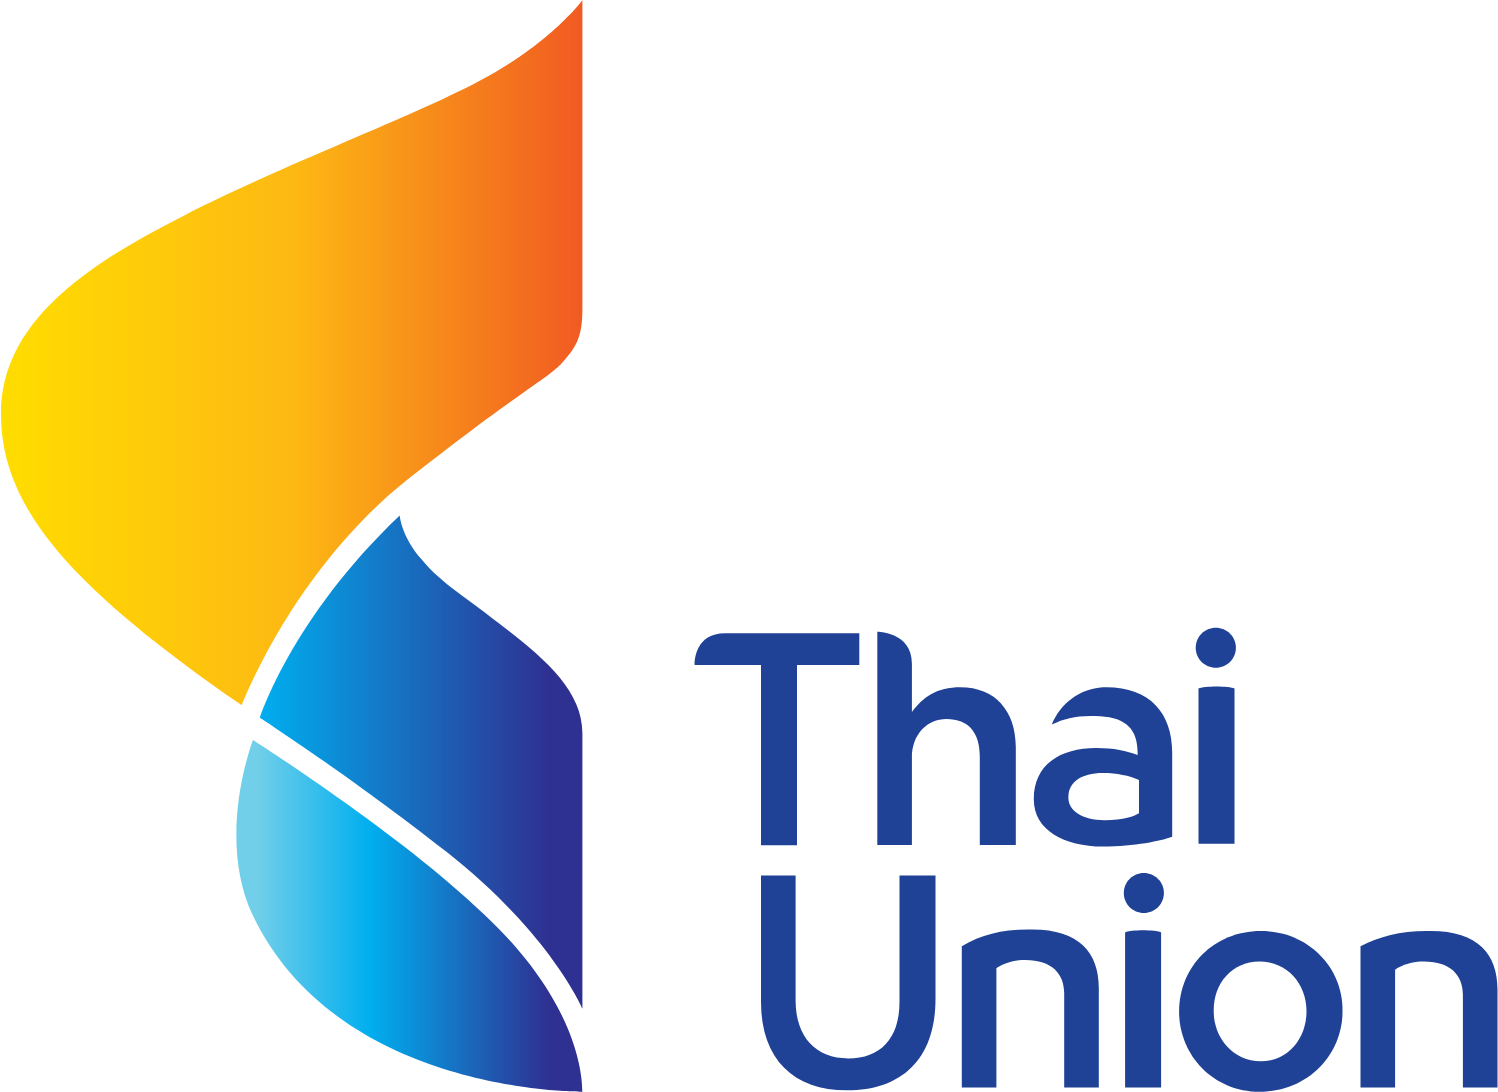 Thai Union Group logo large (transparent PNG)